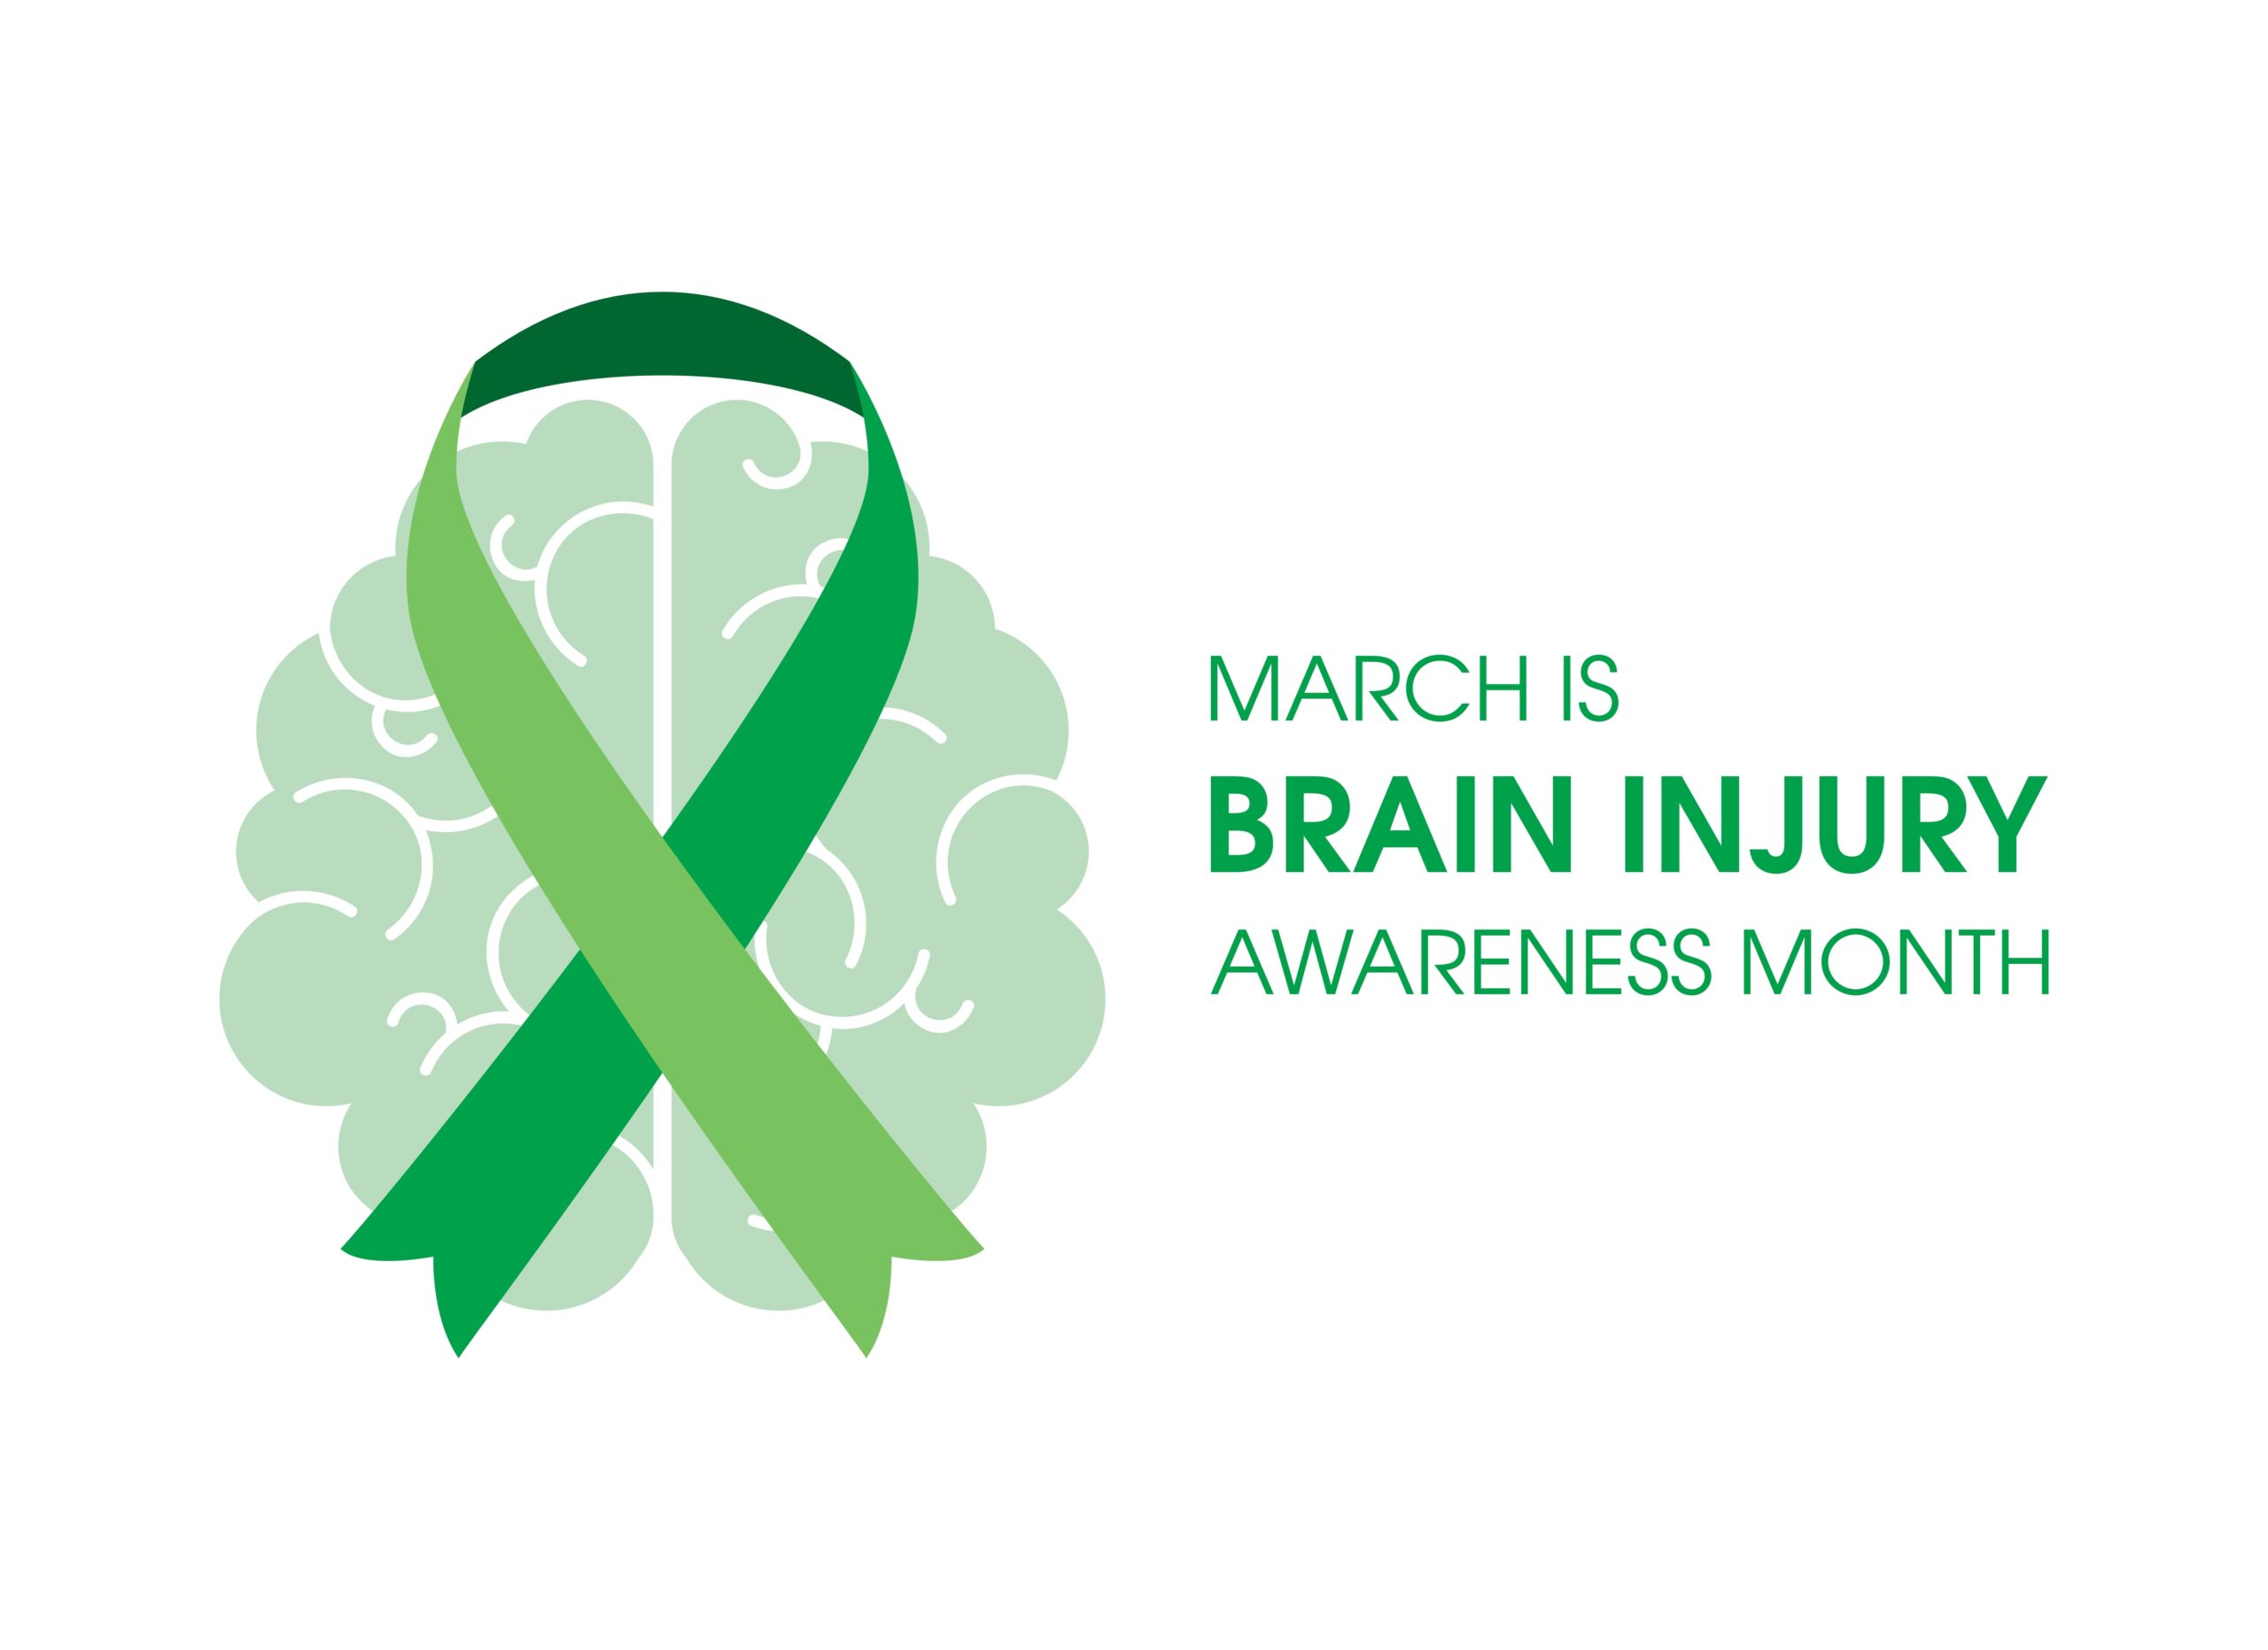 Marzo es el mes de concientización sobre las lesiones cerebrales.